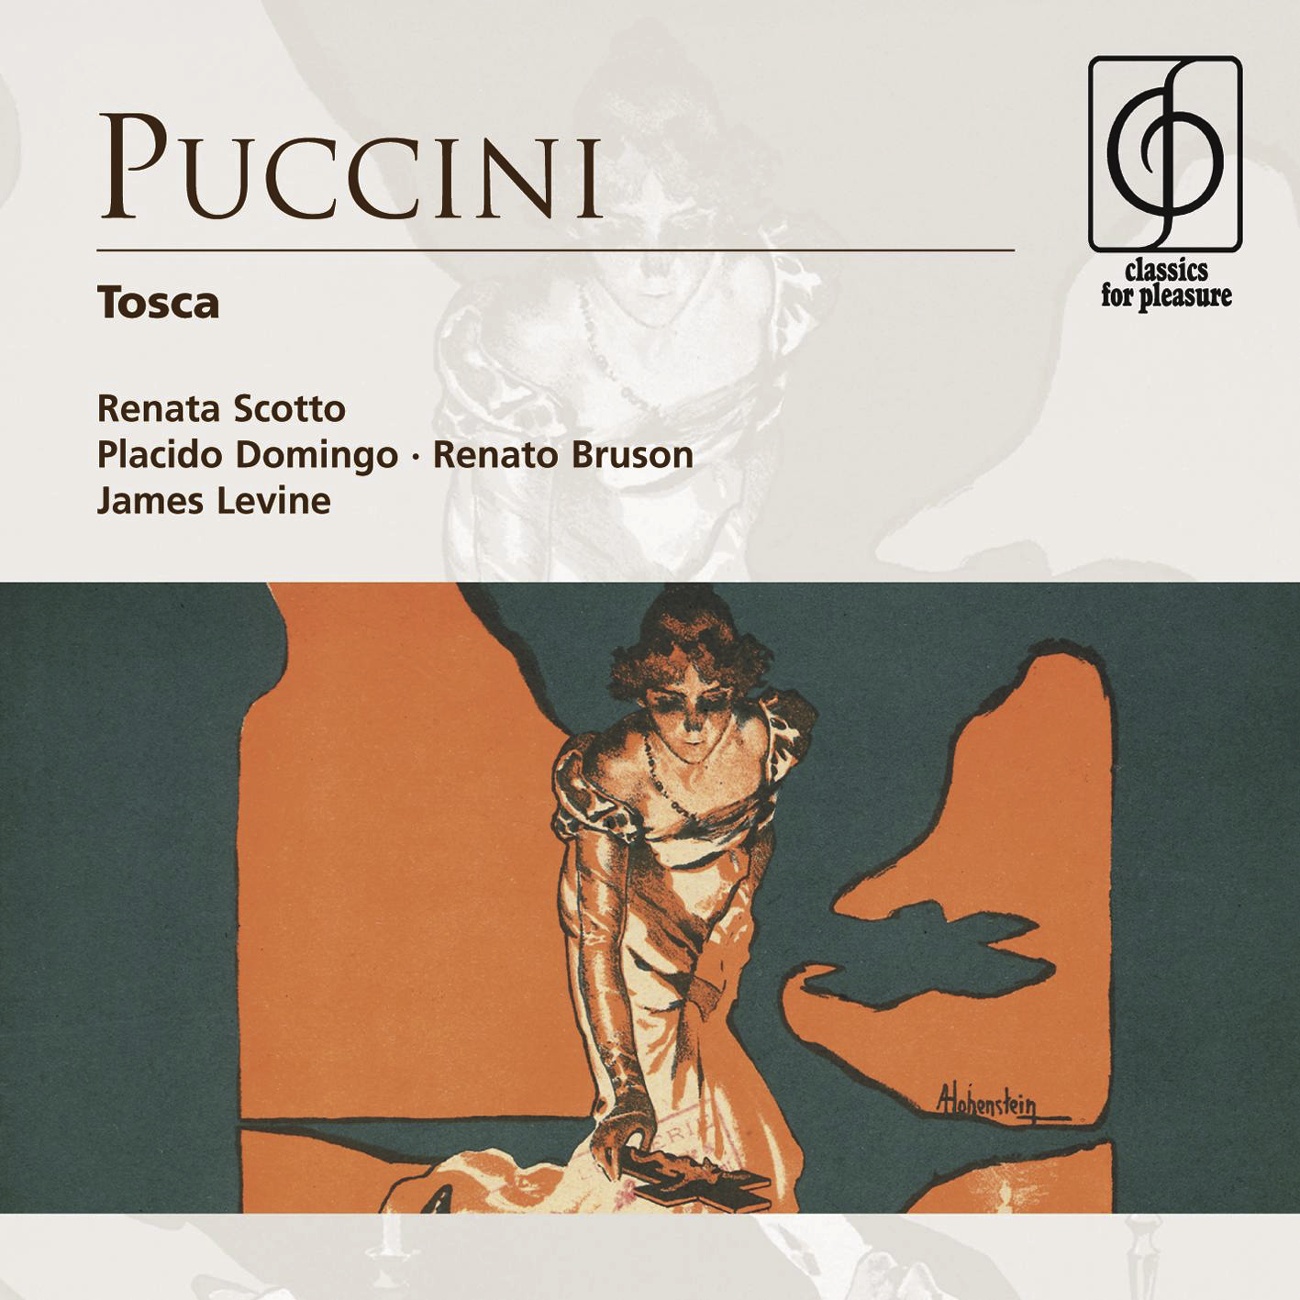 Tosca - Opera in three acts (1997 Digital Remaster), Act I: Ed io venivo a lui tutta dogliosa (Tosca, Scarpia)